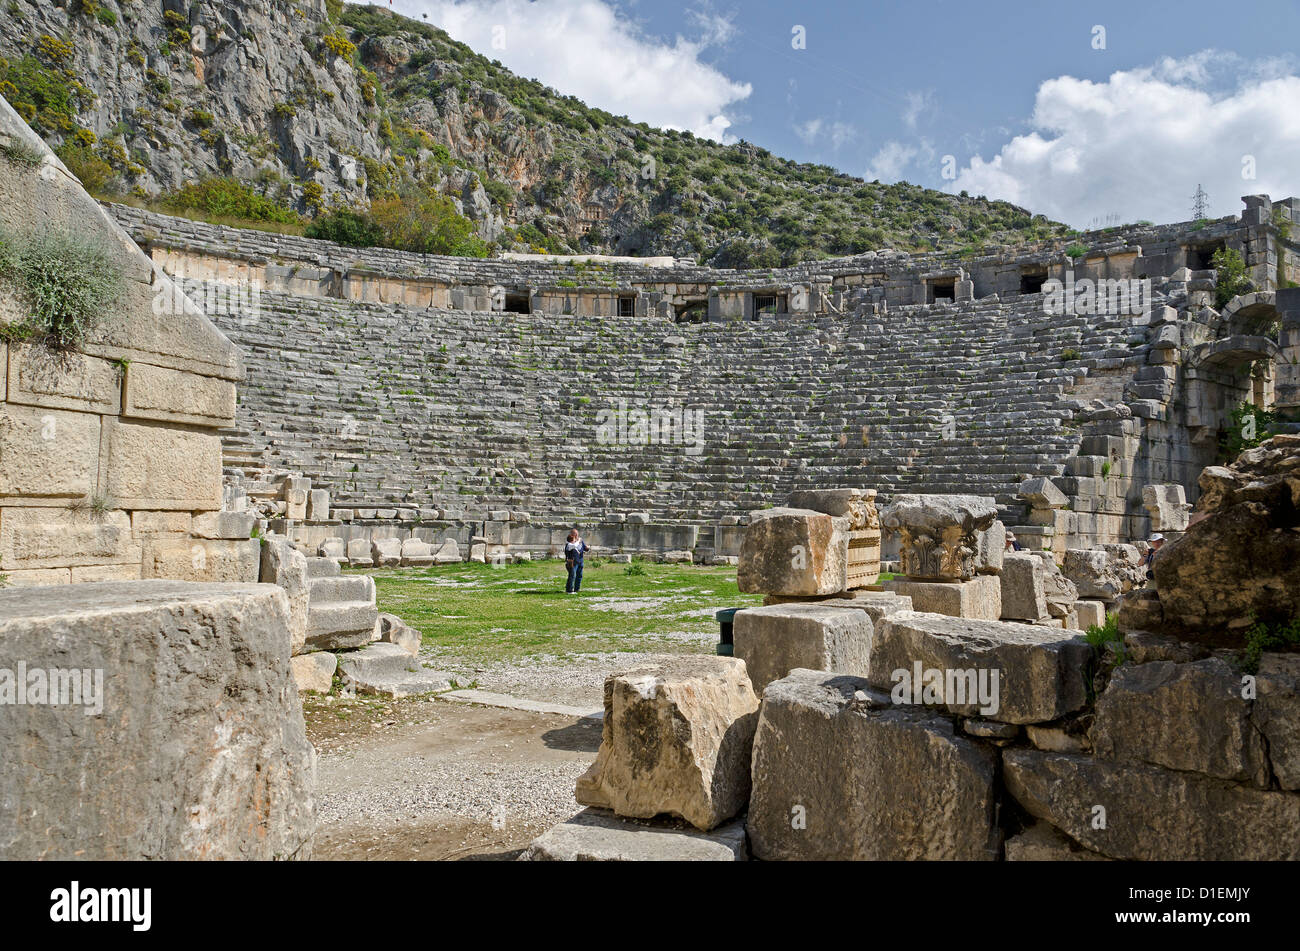 Antique Roman Theater in Myra, Turkey Stock Photo